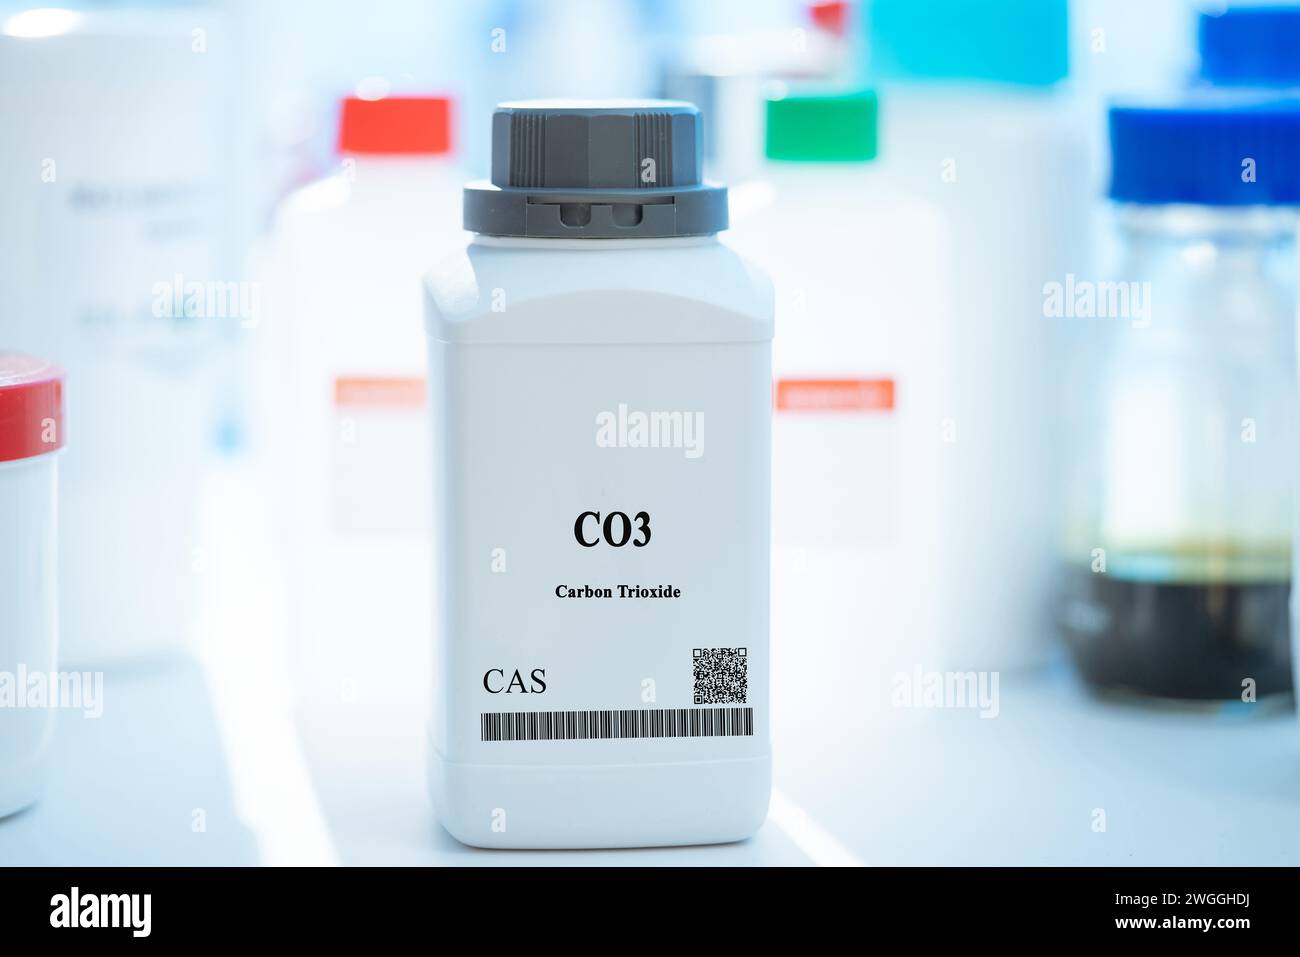 CO3 trióxido de carbono CAS sustancia química en envases de laboratorio de plástico blanco Foto de stock